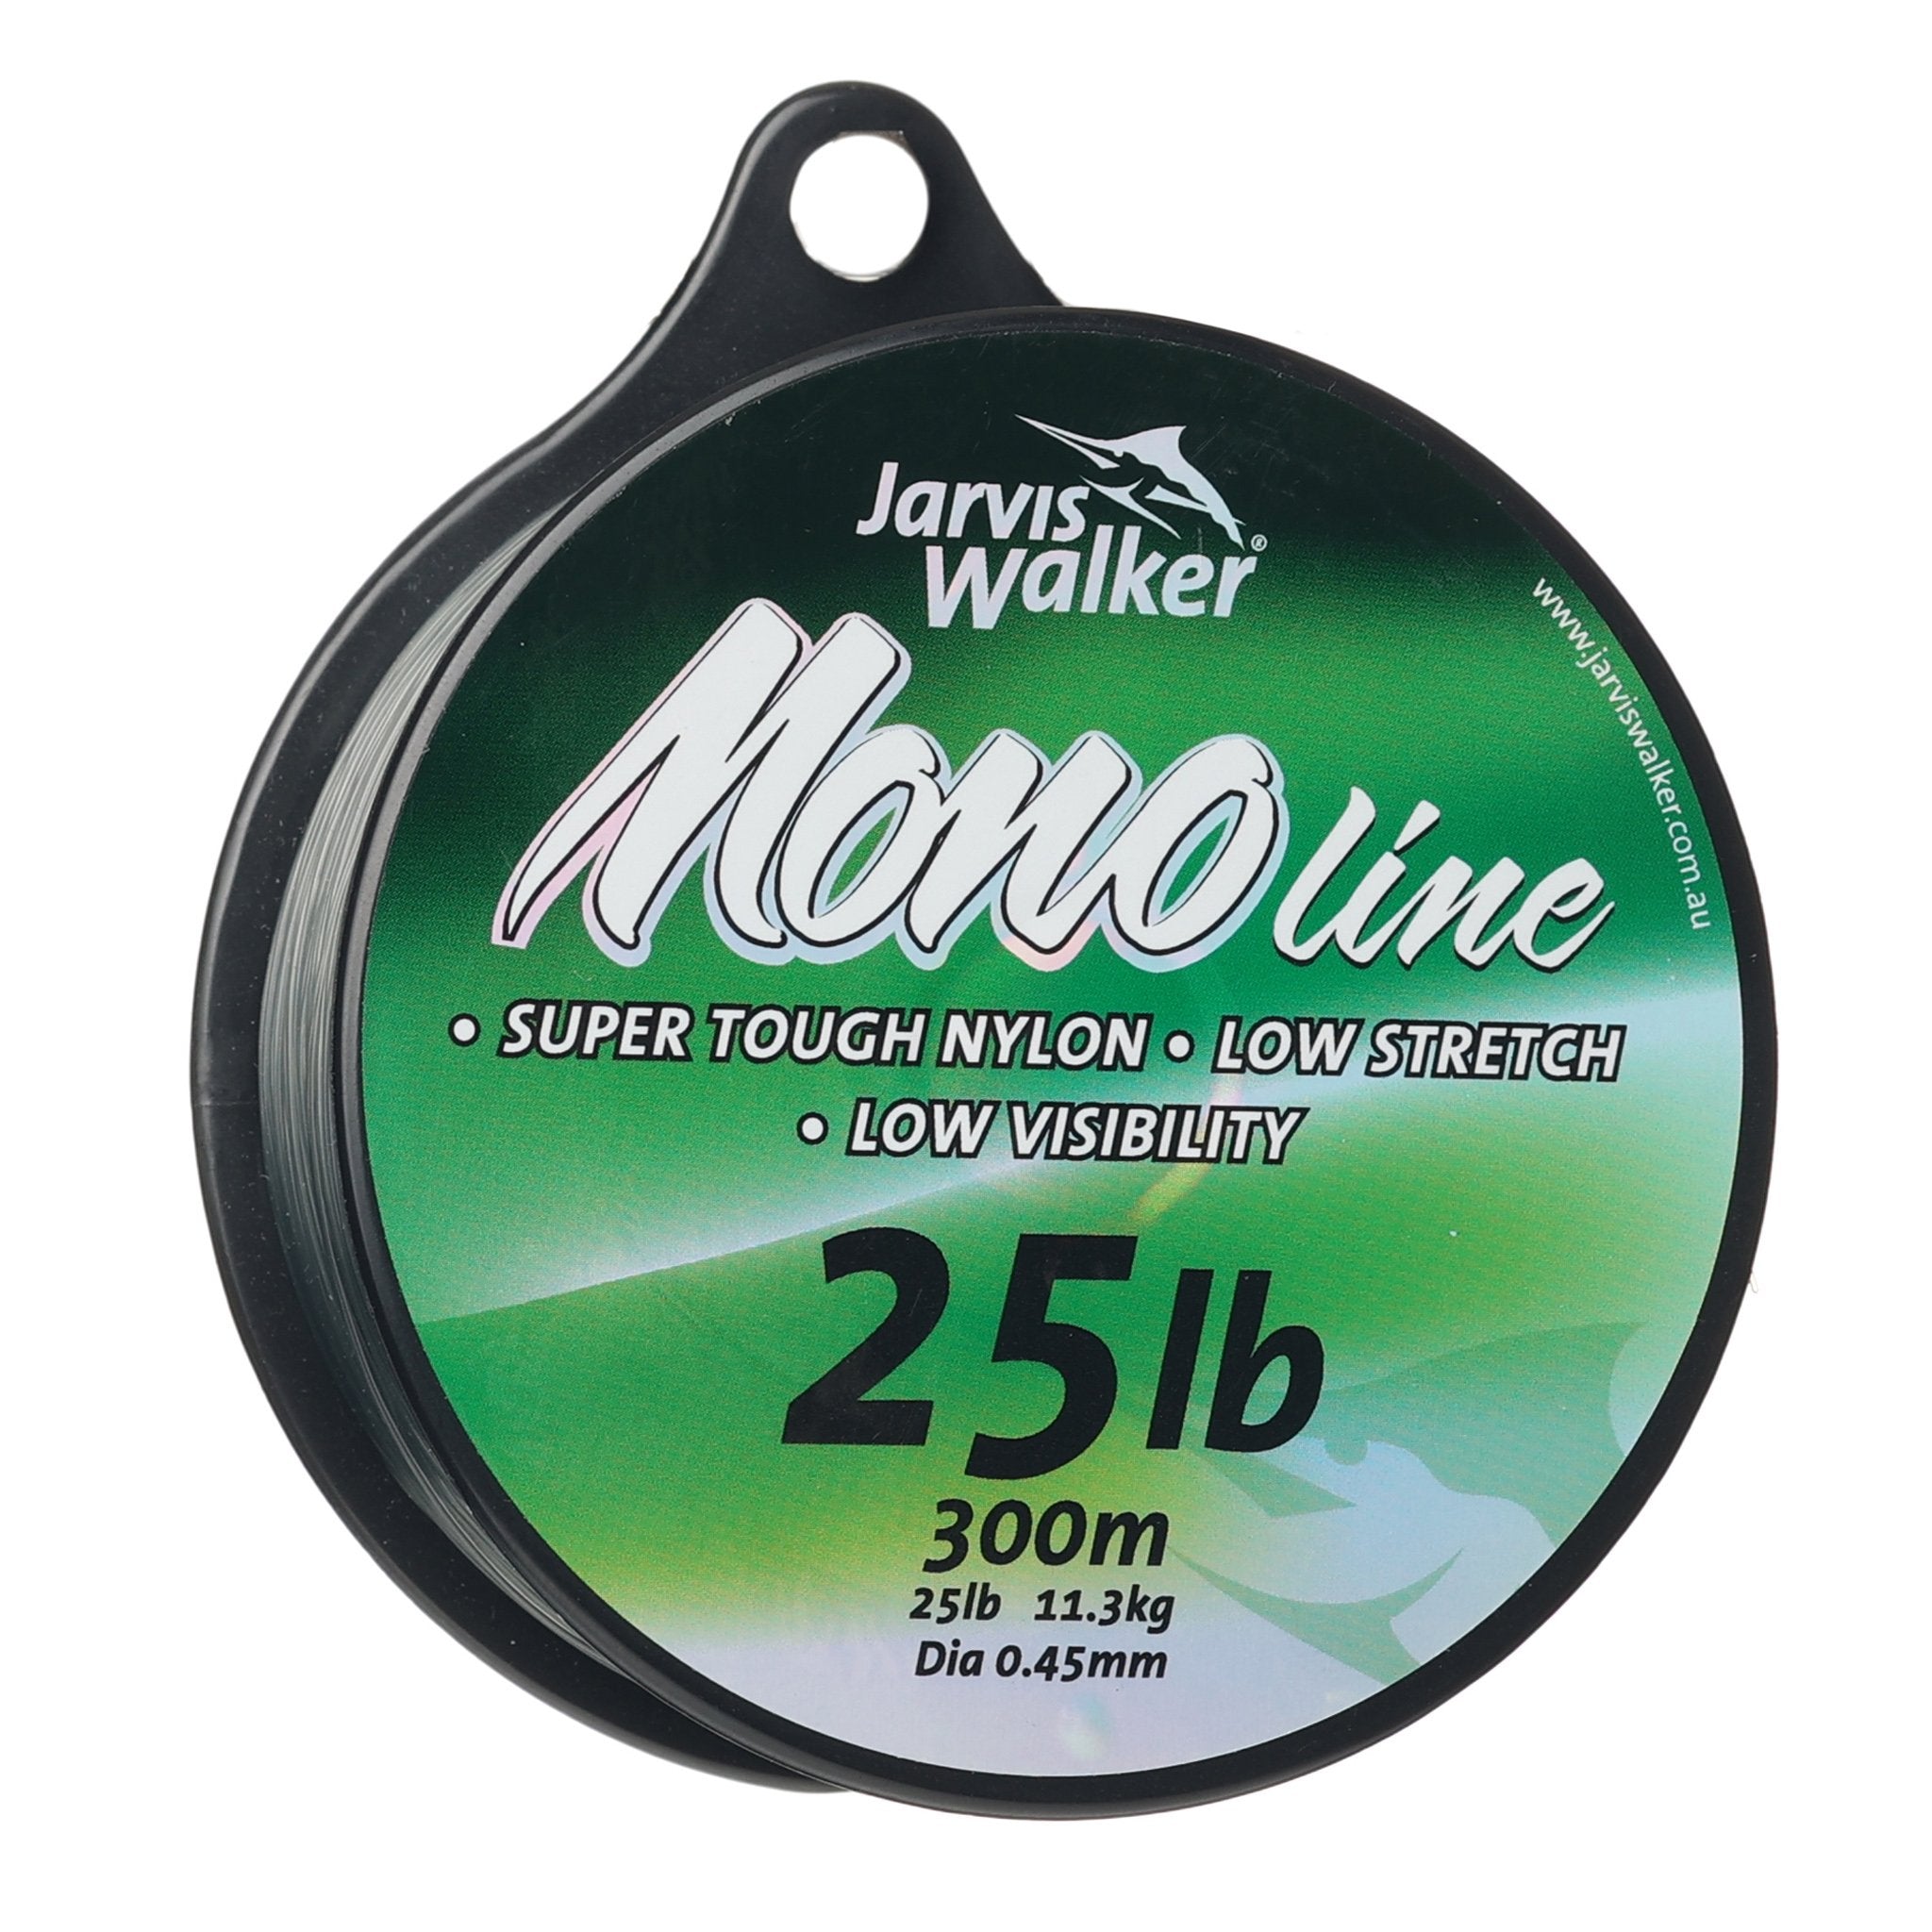 Jarvis Walker Mono Line - Jarvis Walker – Jarvis Walker Brands